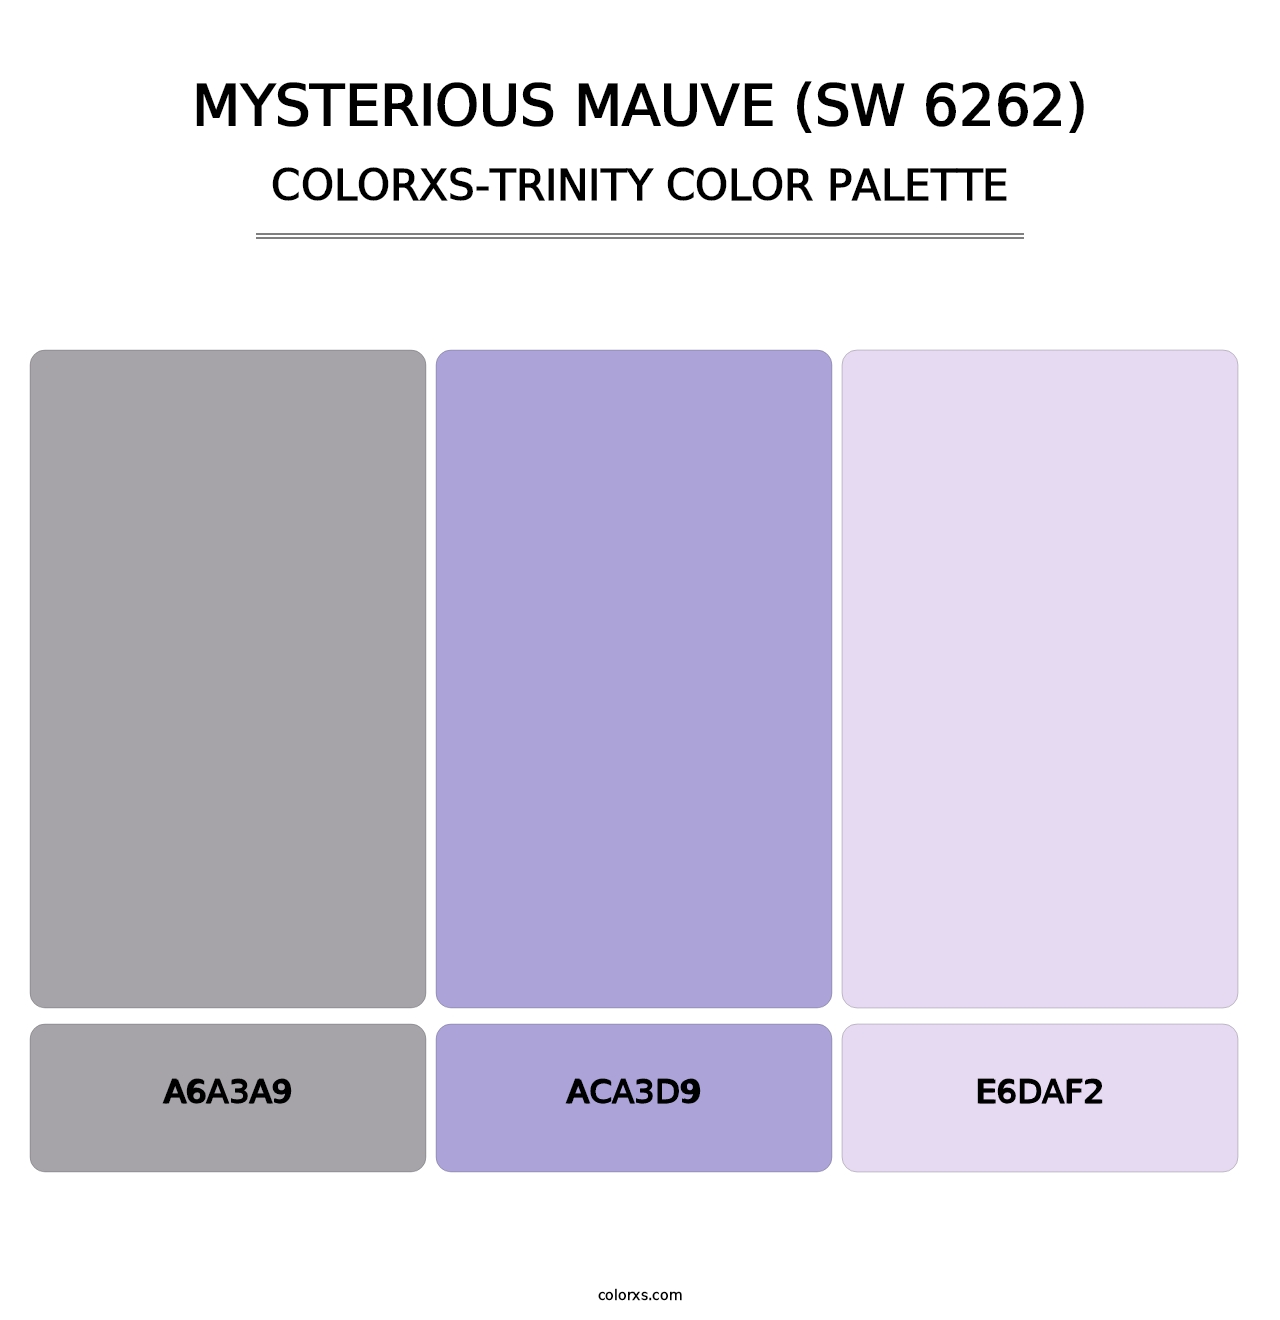 Mysterious Mauve (SW 6262) - Colorxs Trinity Palette